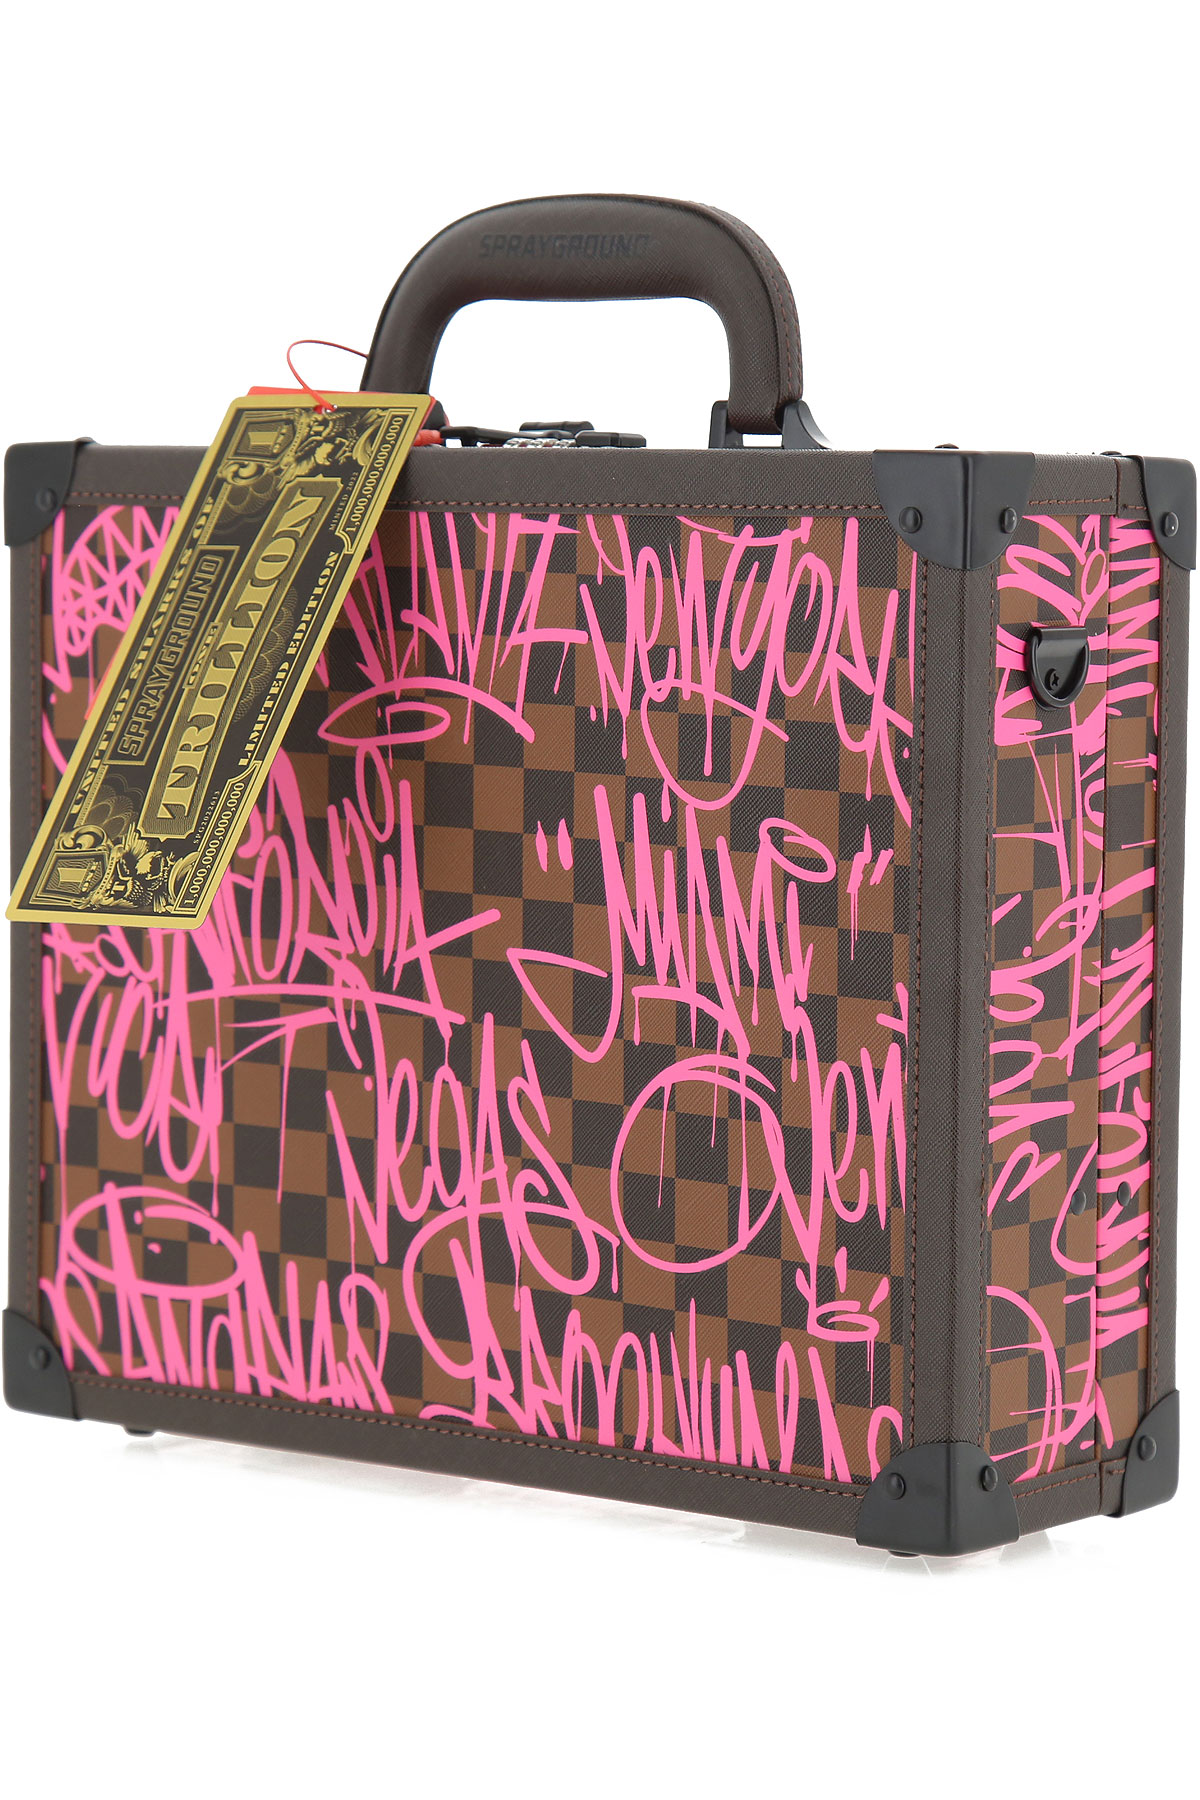 Briefcases Sprayground, Style code: 910b5103nsz